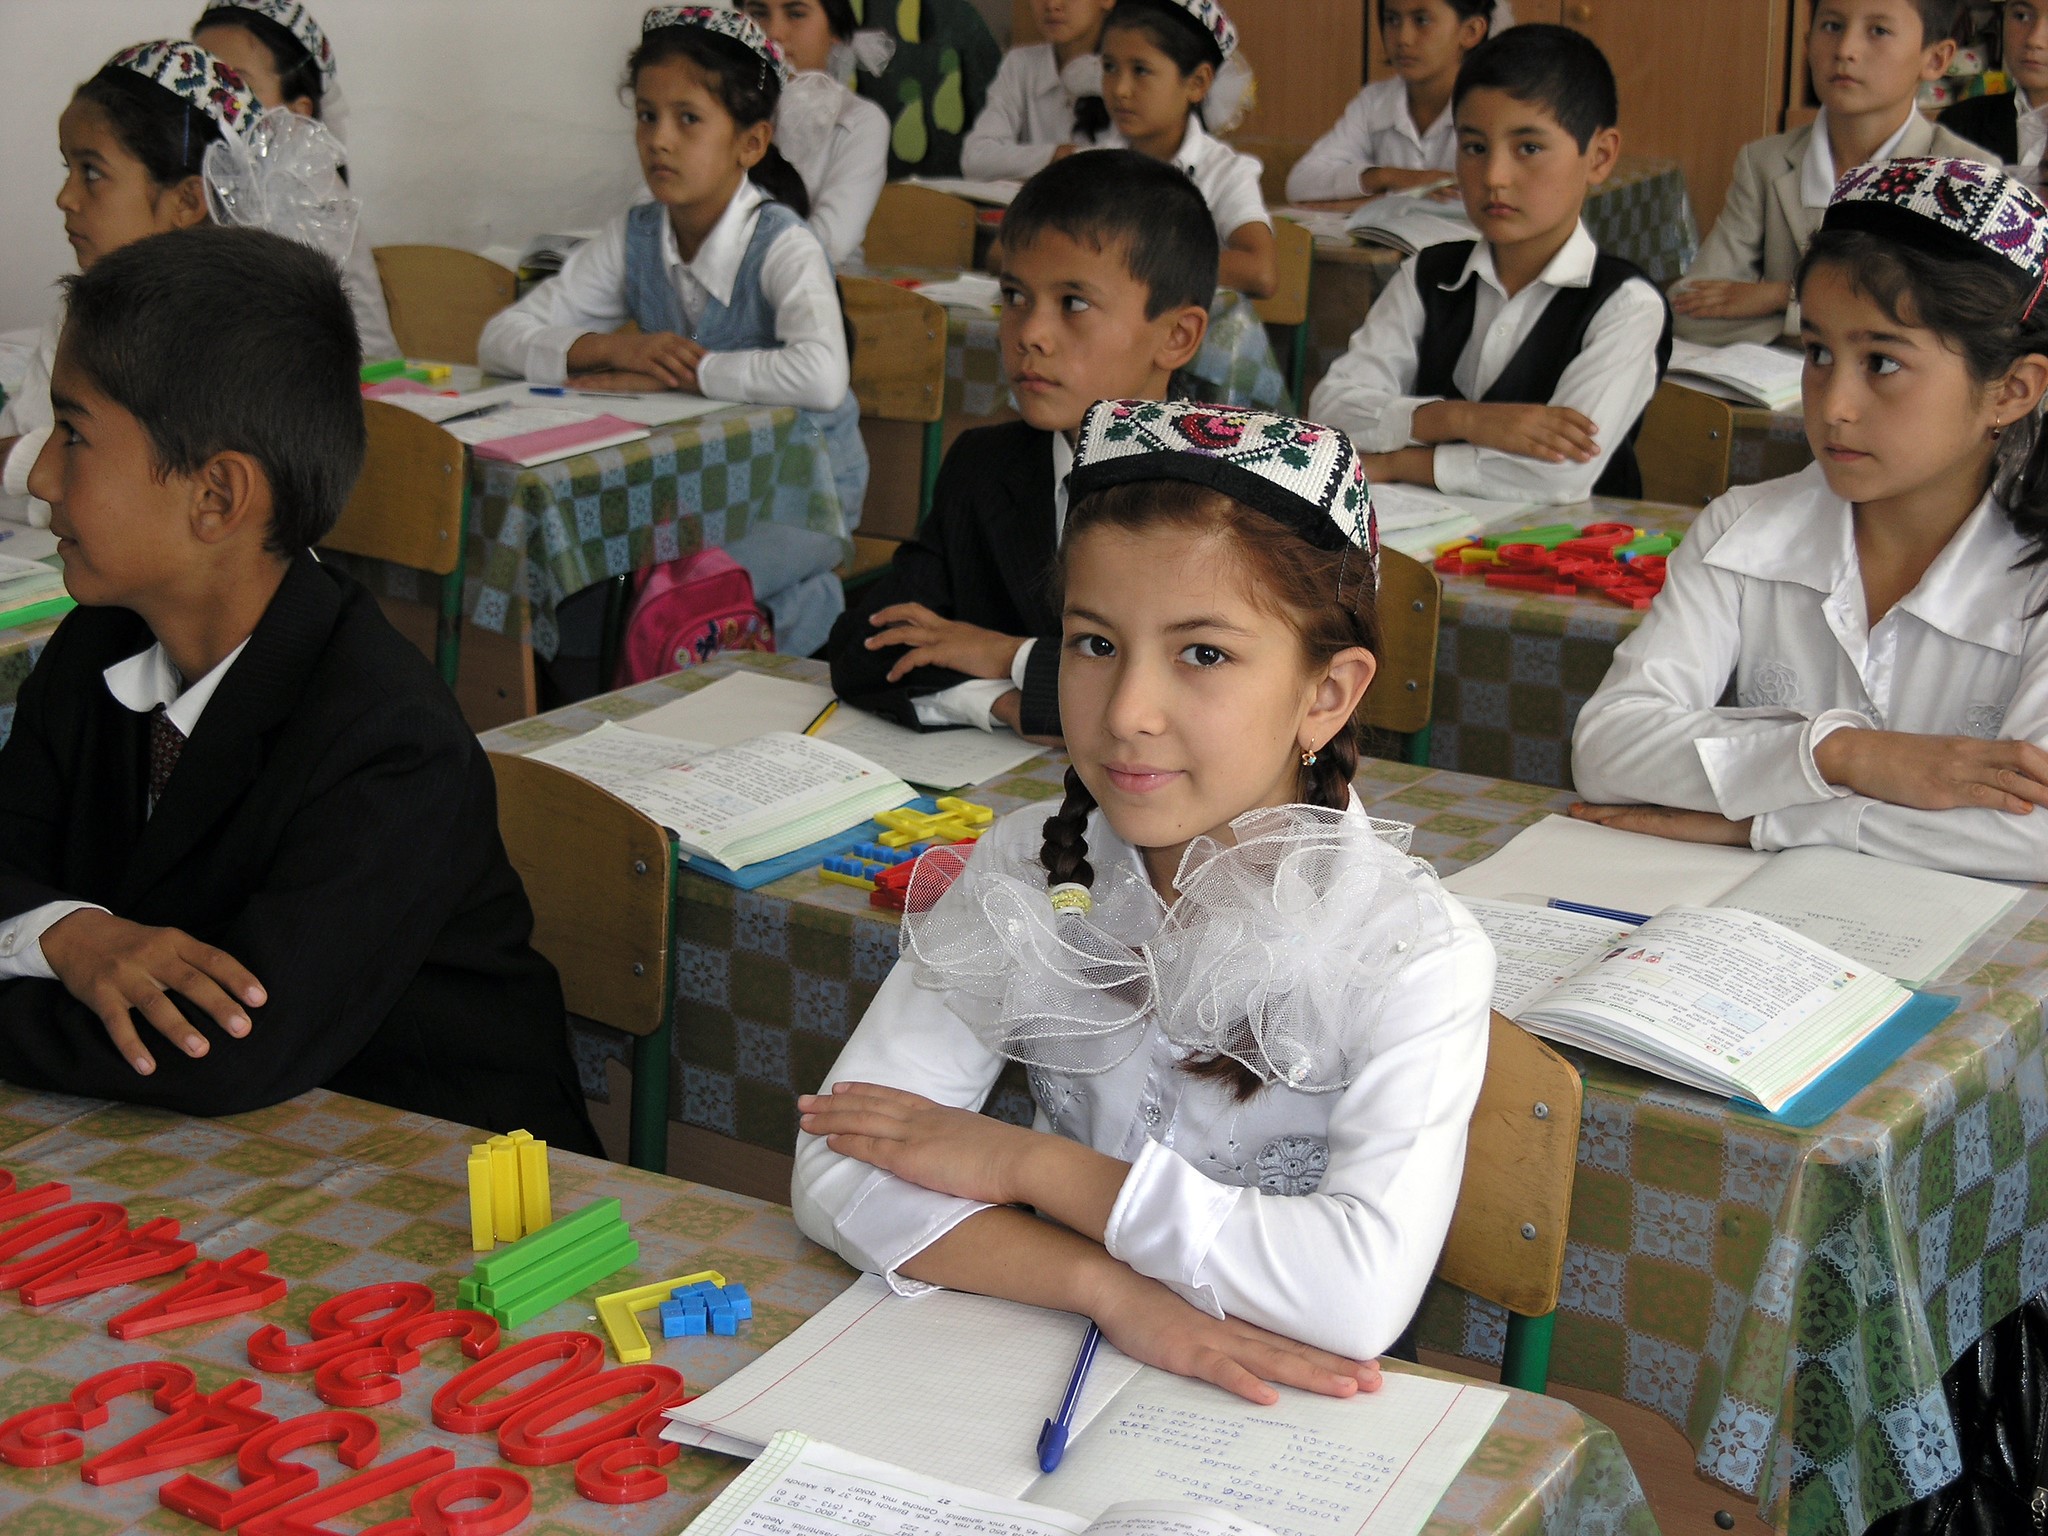 Узбекский язык красивый. Школа Узбекистан. Узбекские дети в школе. Начальная школа в Узбекистане. Узбекские девочки в школе.